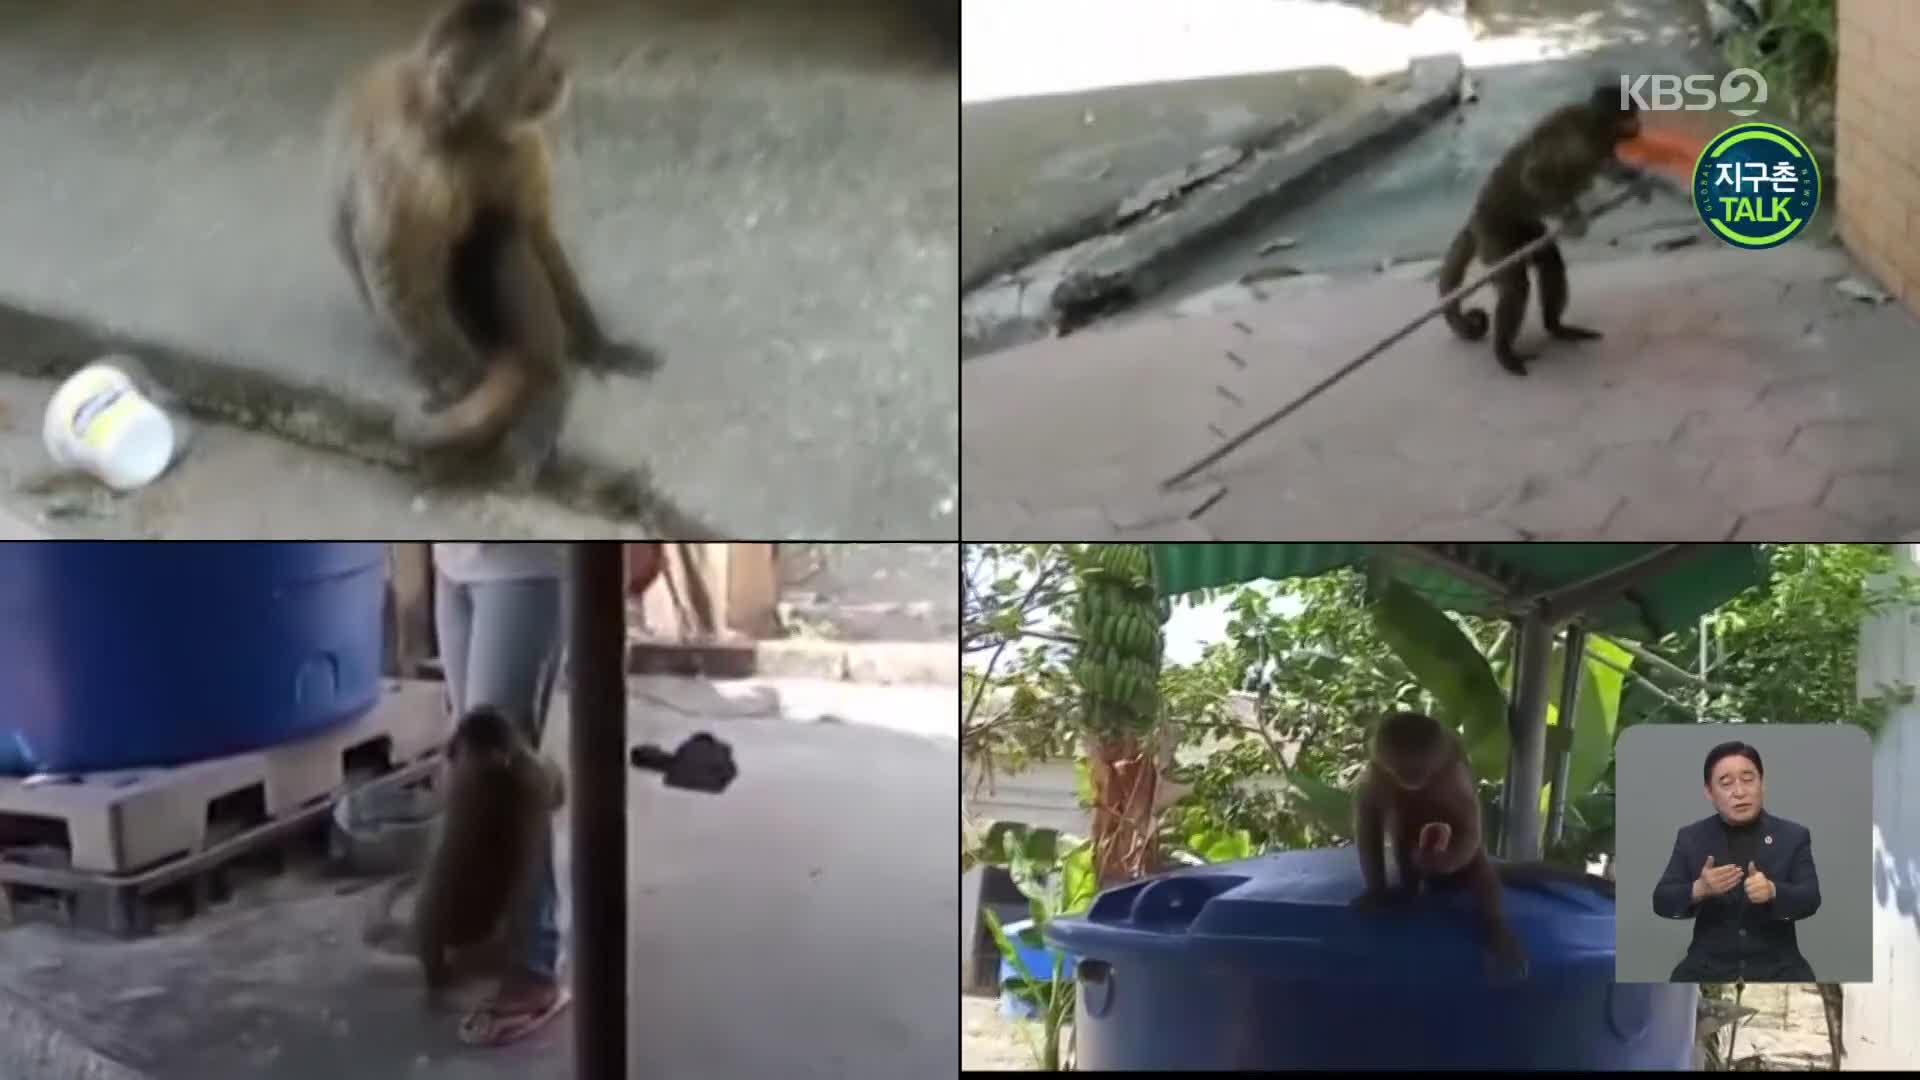 [지구촌 Talk] 베네수엘라 민가에 출몰한 원숭이떼